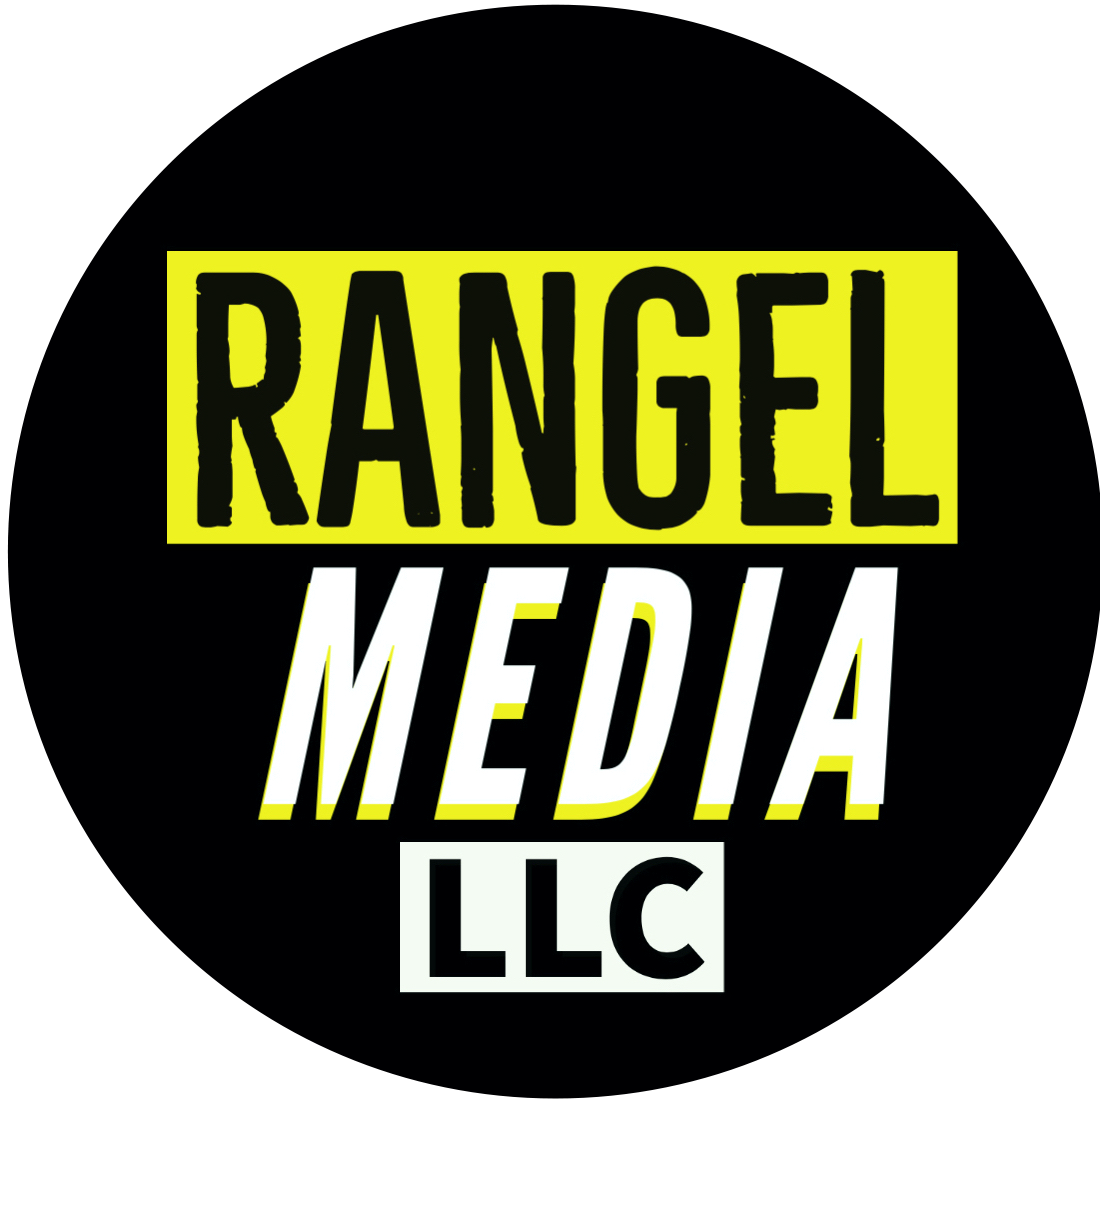  Rangel Media 